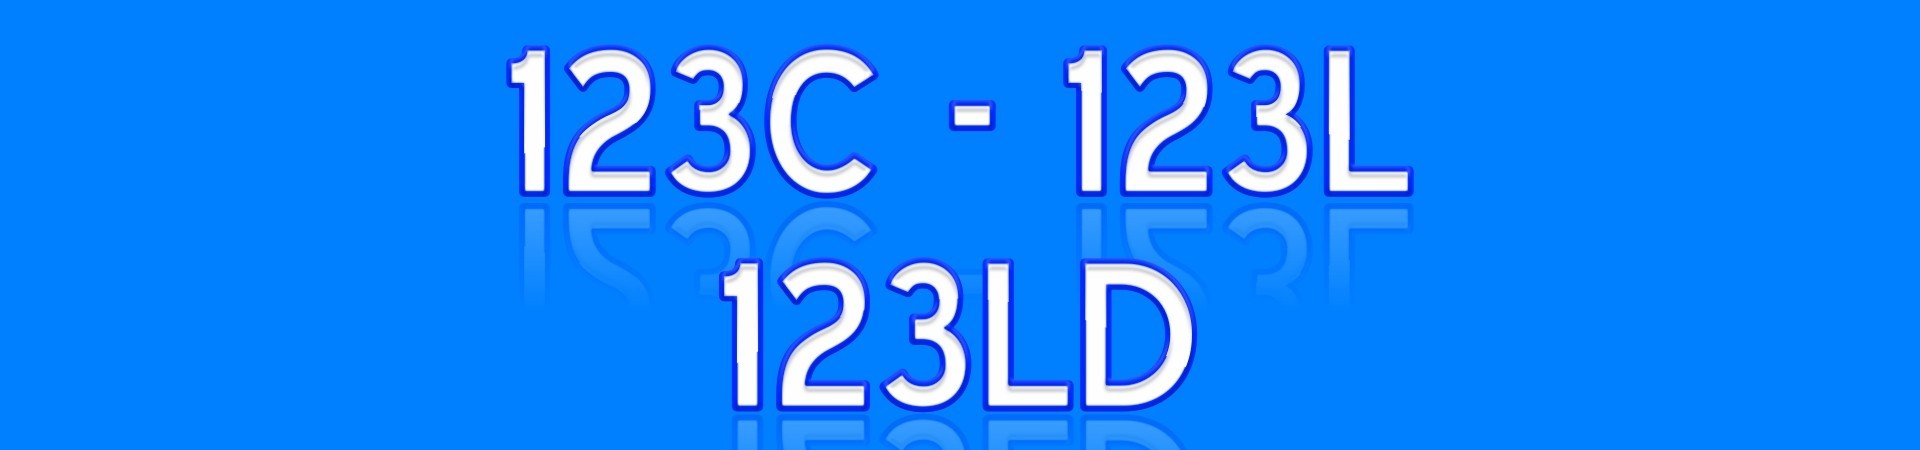 123C 123L 123LD